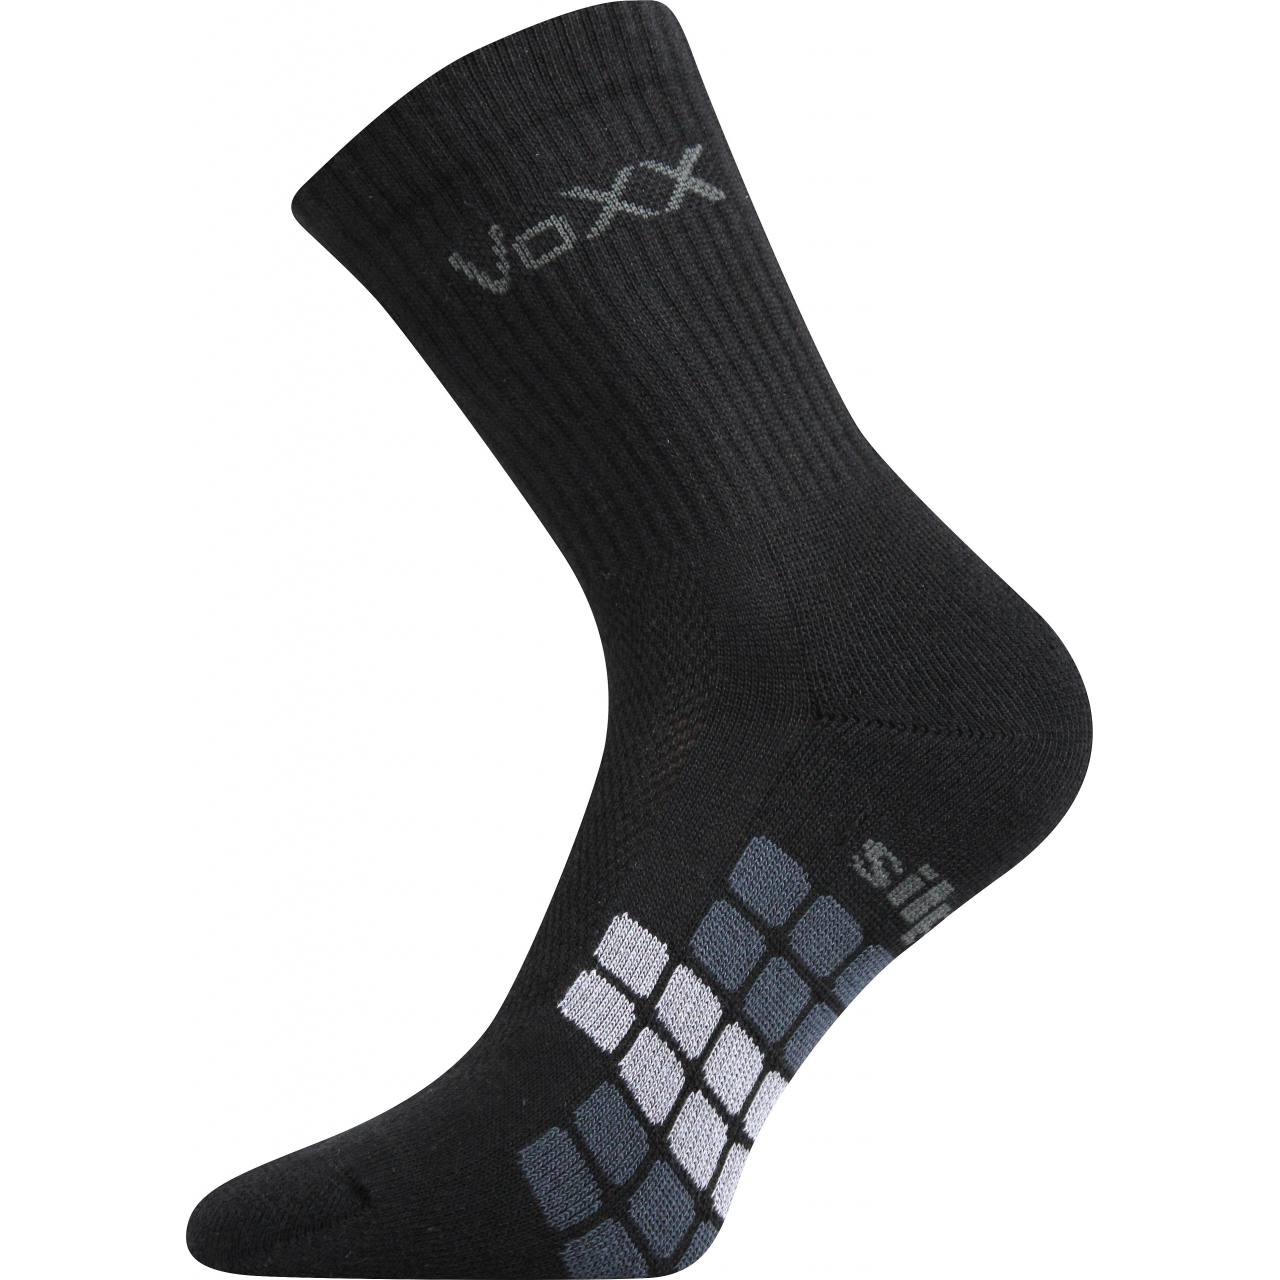 Ponožky unisex sportovní Voxx Raptor - černé, 43-46